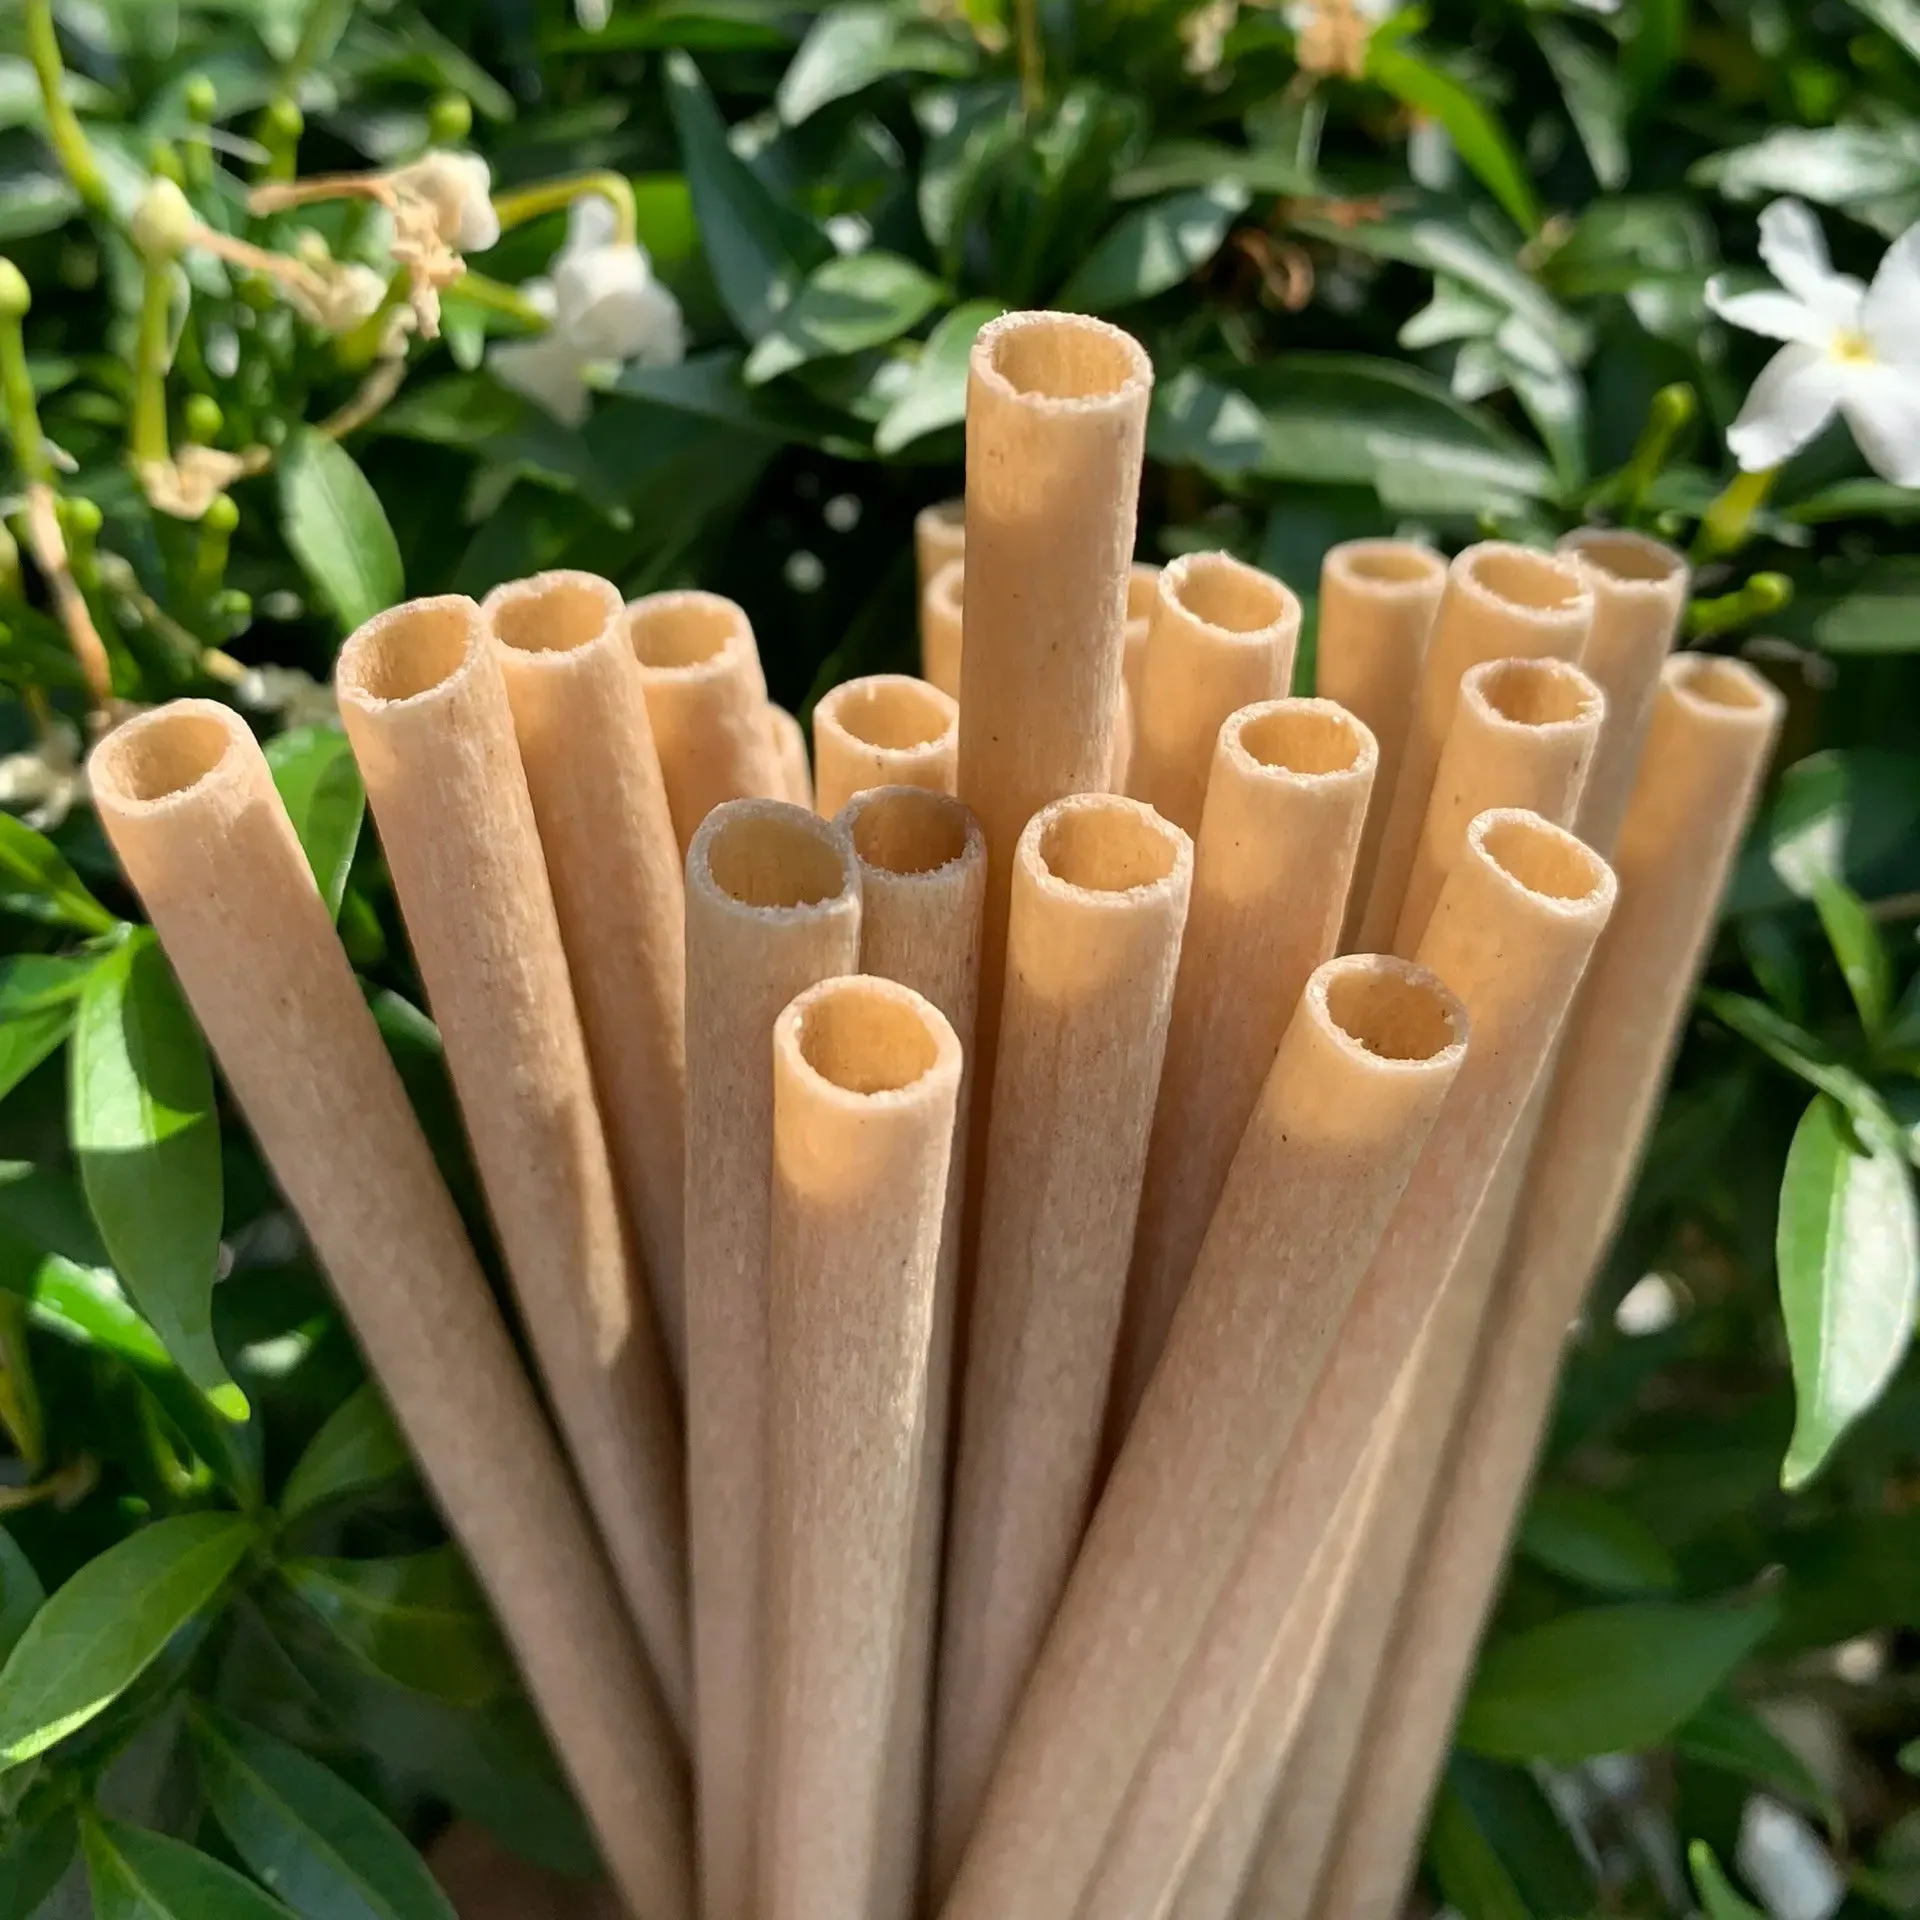 Cannucce a base di tubi di bambù secchi alla rinfusa a prezzi economici